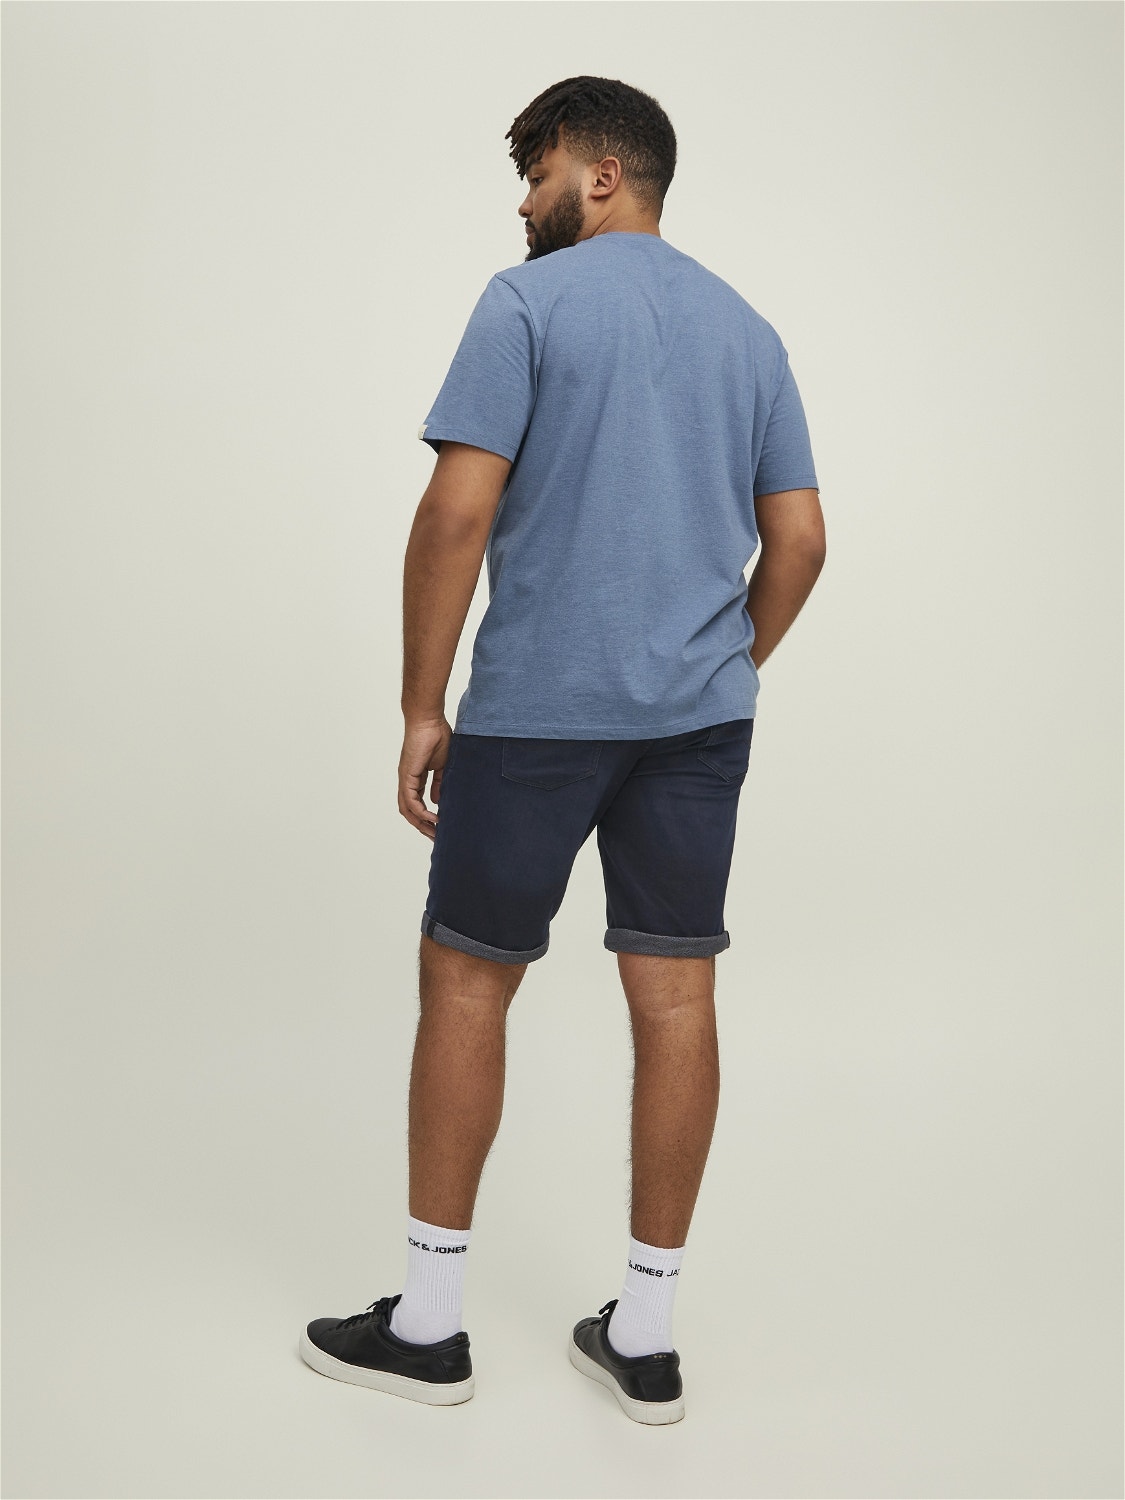 Jack & Jones Plus Size Regular Fit Jeans Shorts -Blue Denim - 12209236